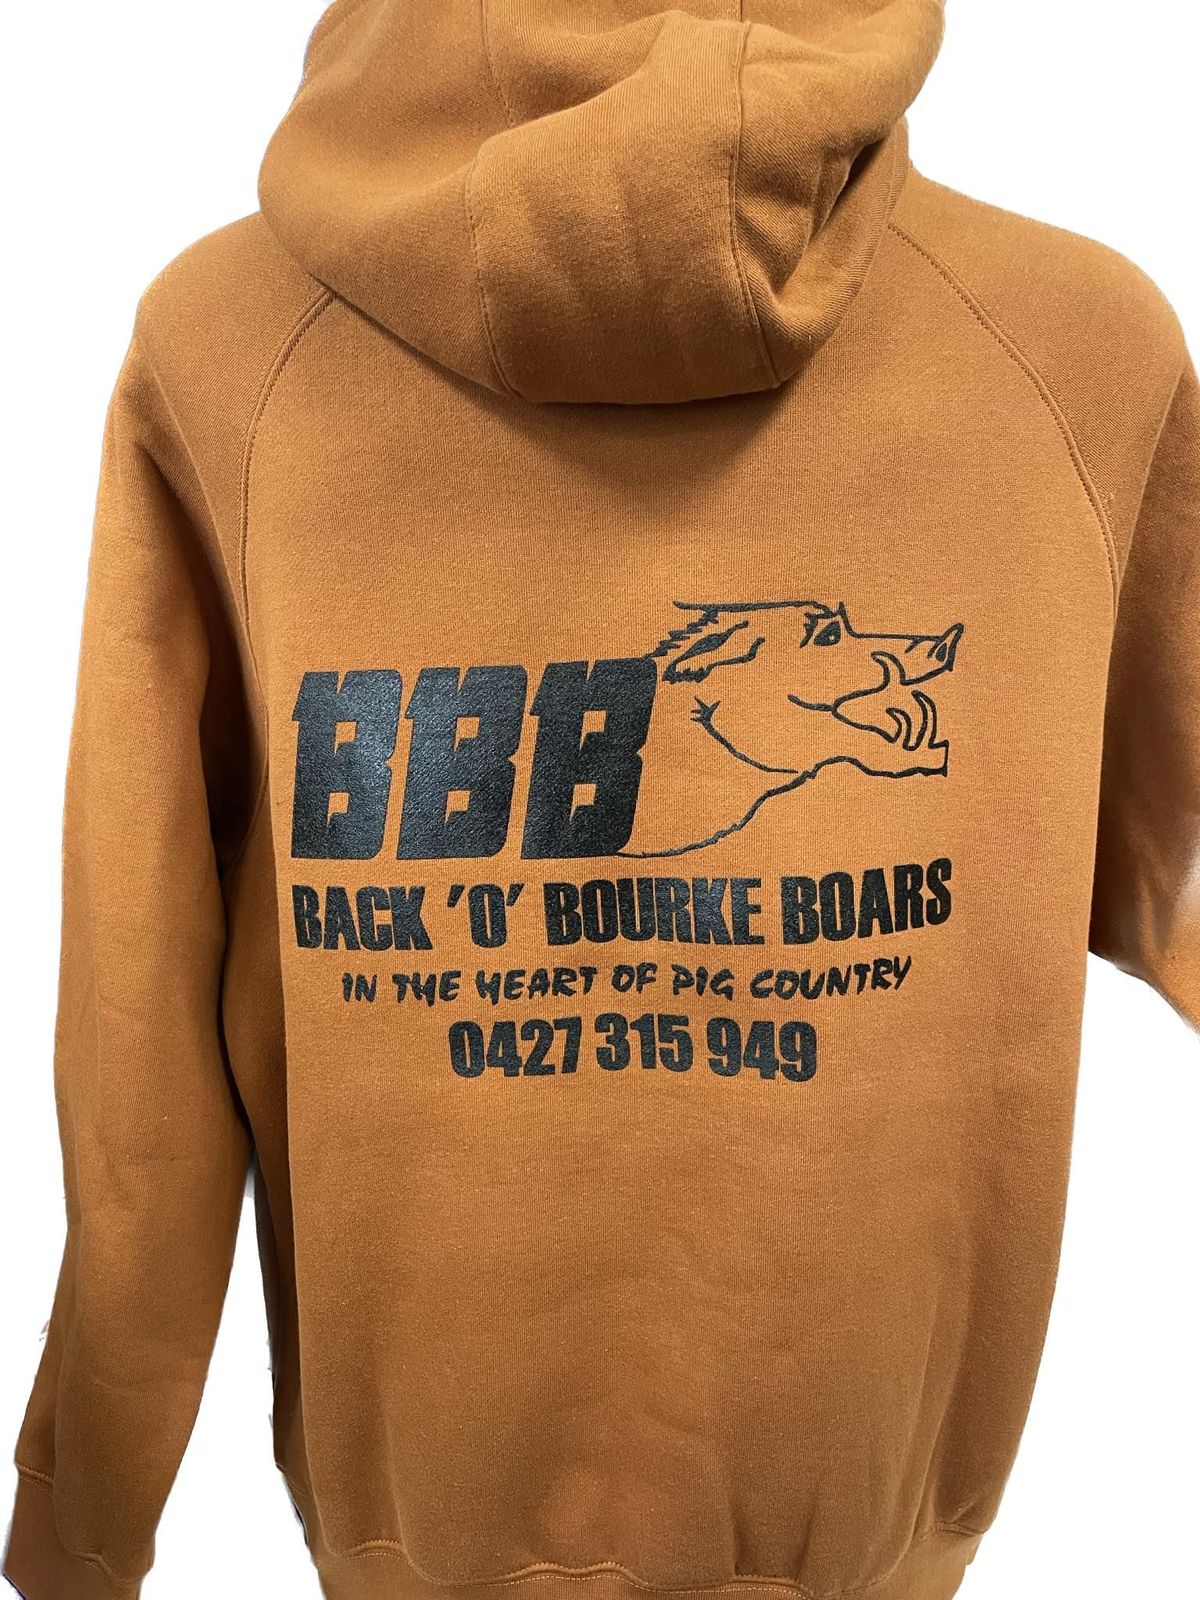 BBB Back of Bourke Boars jumper -Screen Printer in Dubbo, NSW